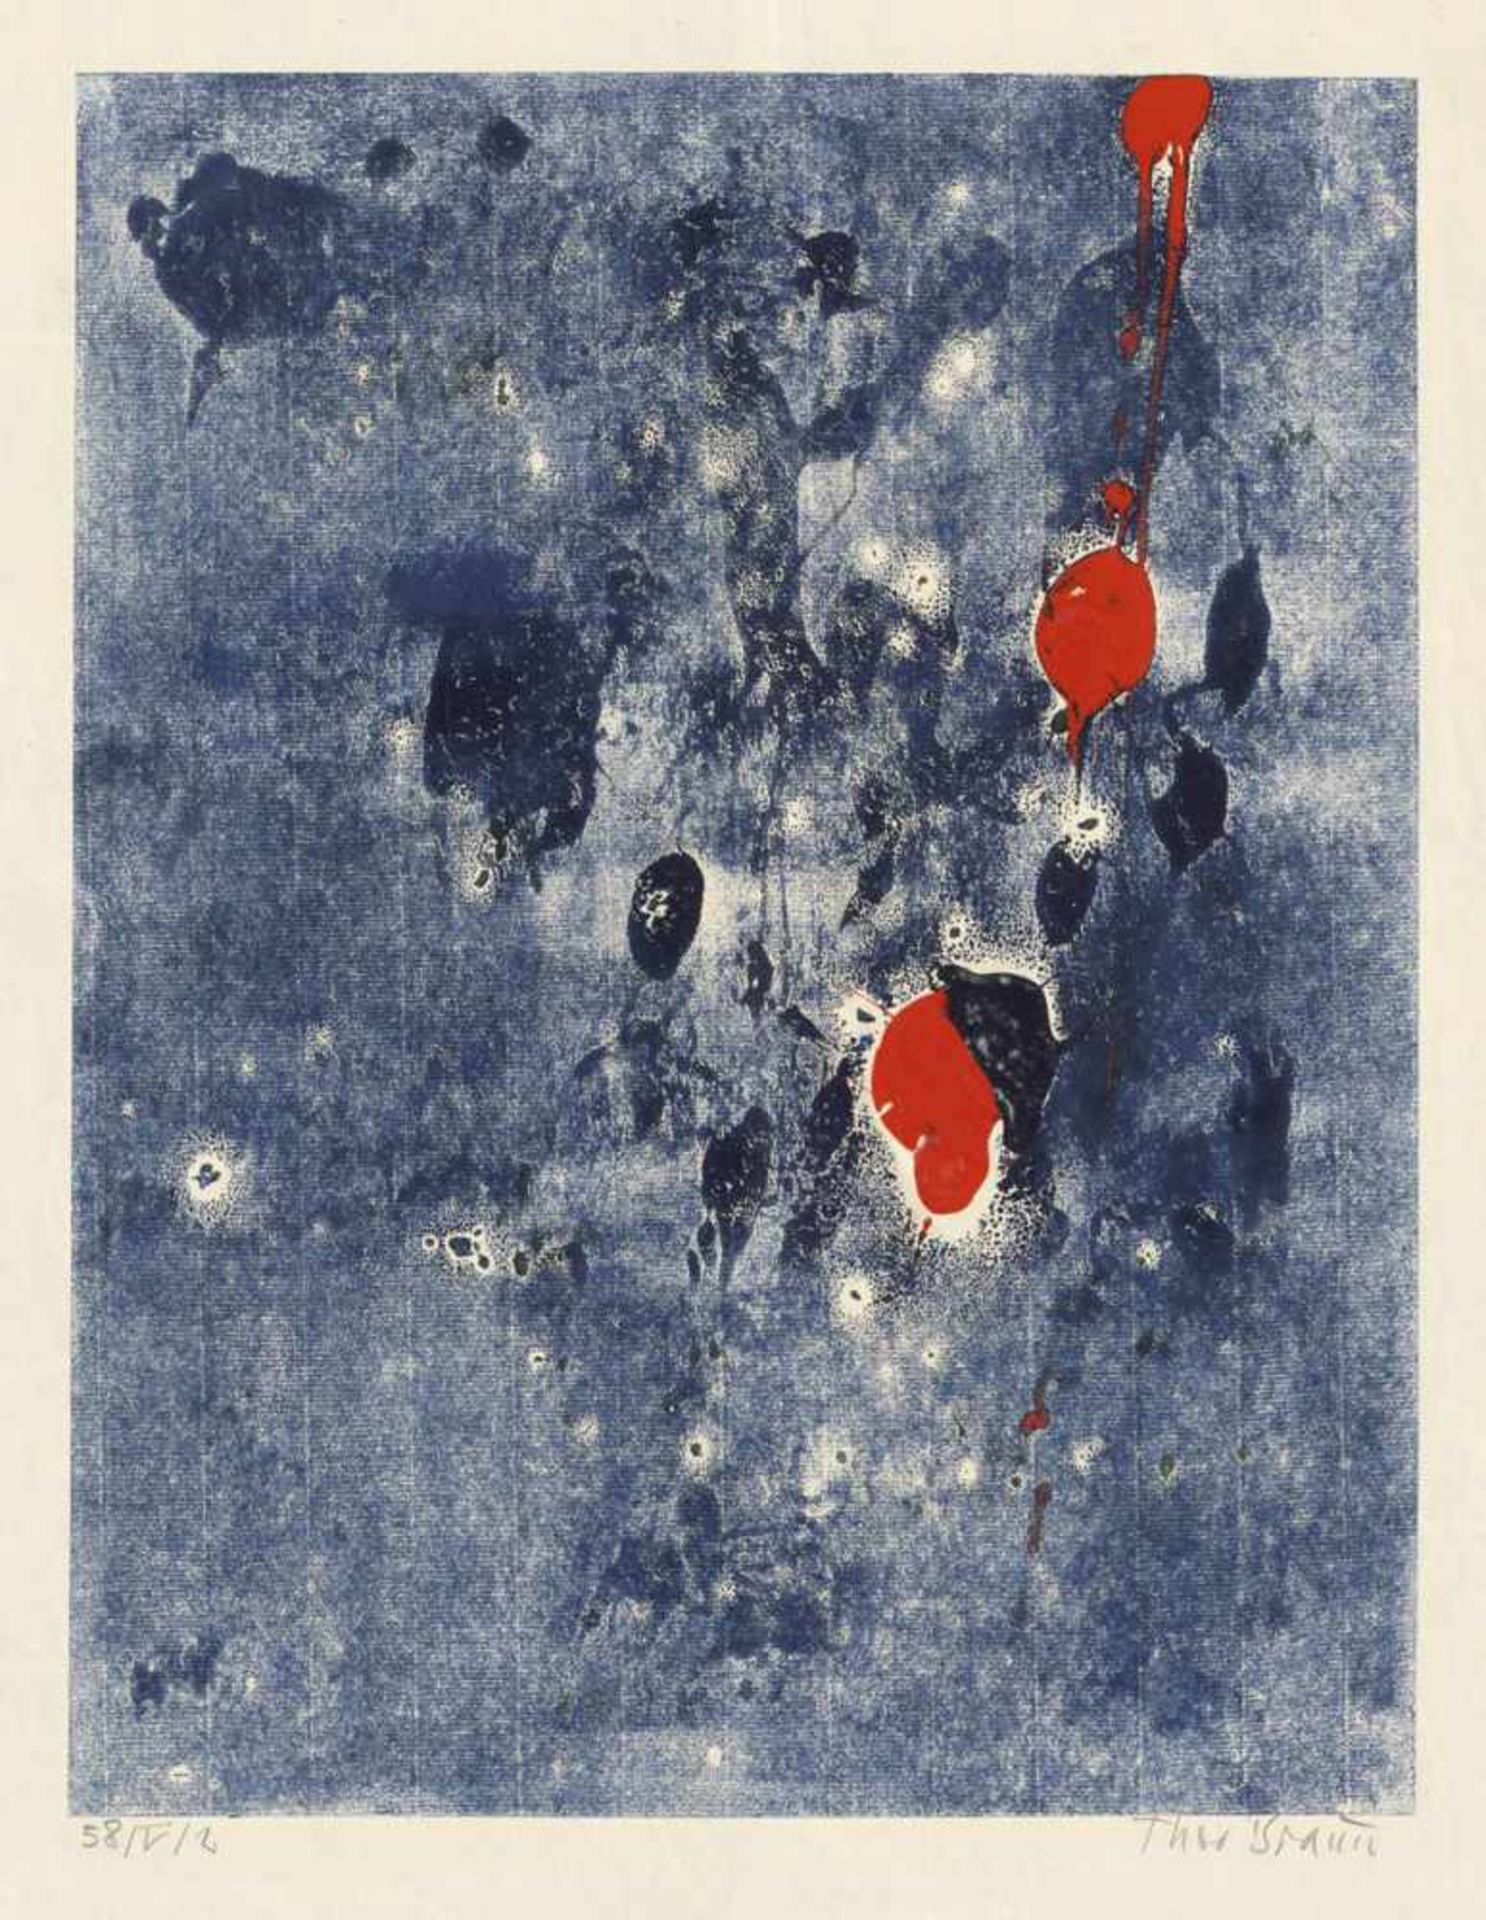 Braun, Theo: KompositionKompositionAcrylfarben über Monotypie auf Ingres-Bütten. 1958.65 x 48 cm.